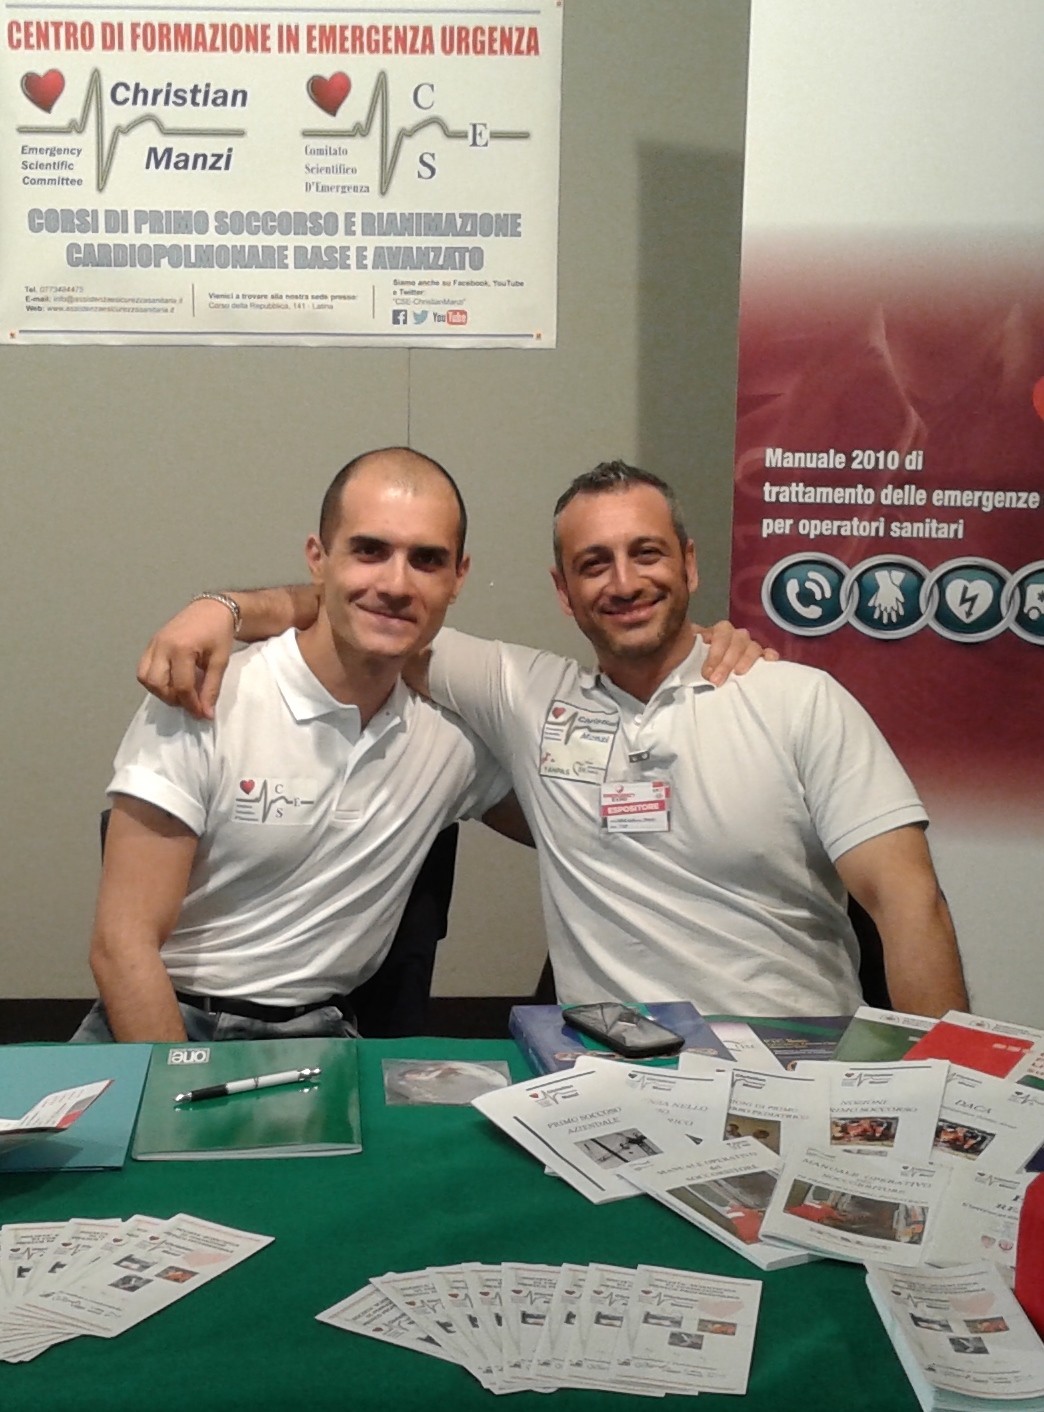 Christian Manzi con Alessio Biondino durante l'Emergency Expo di Latina, 2014.